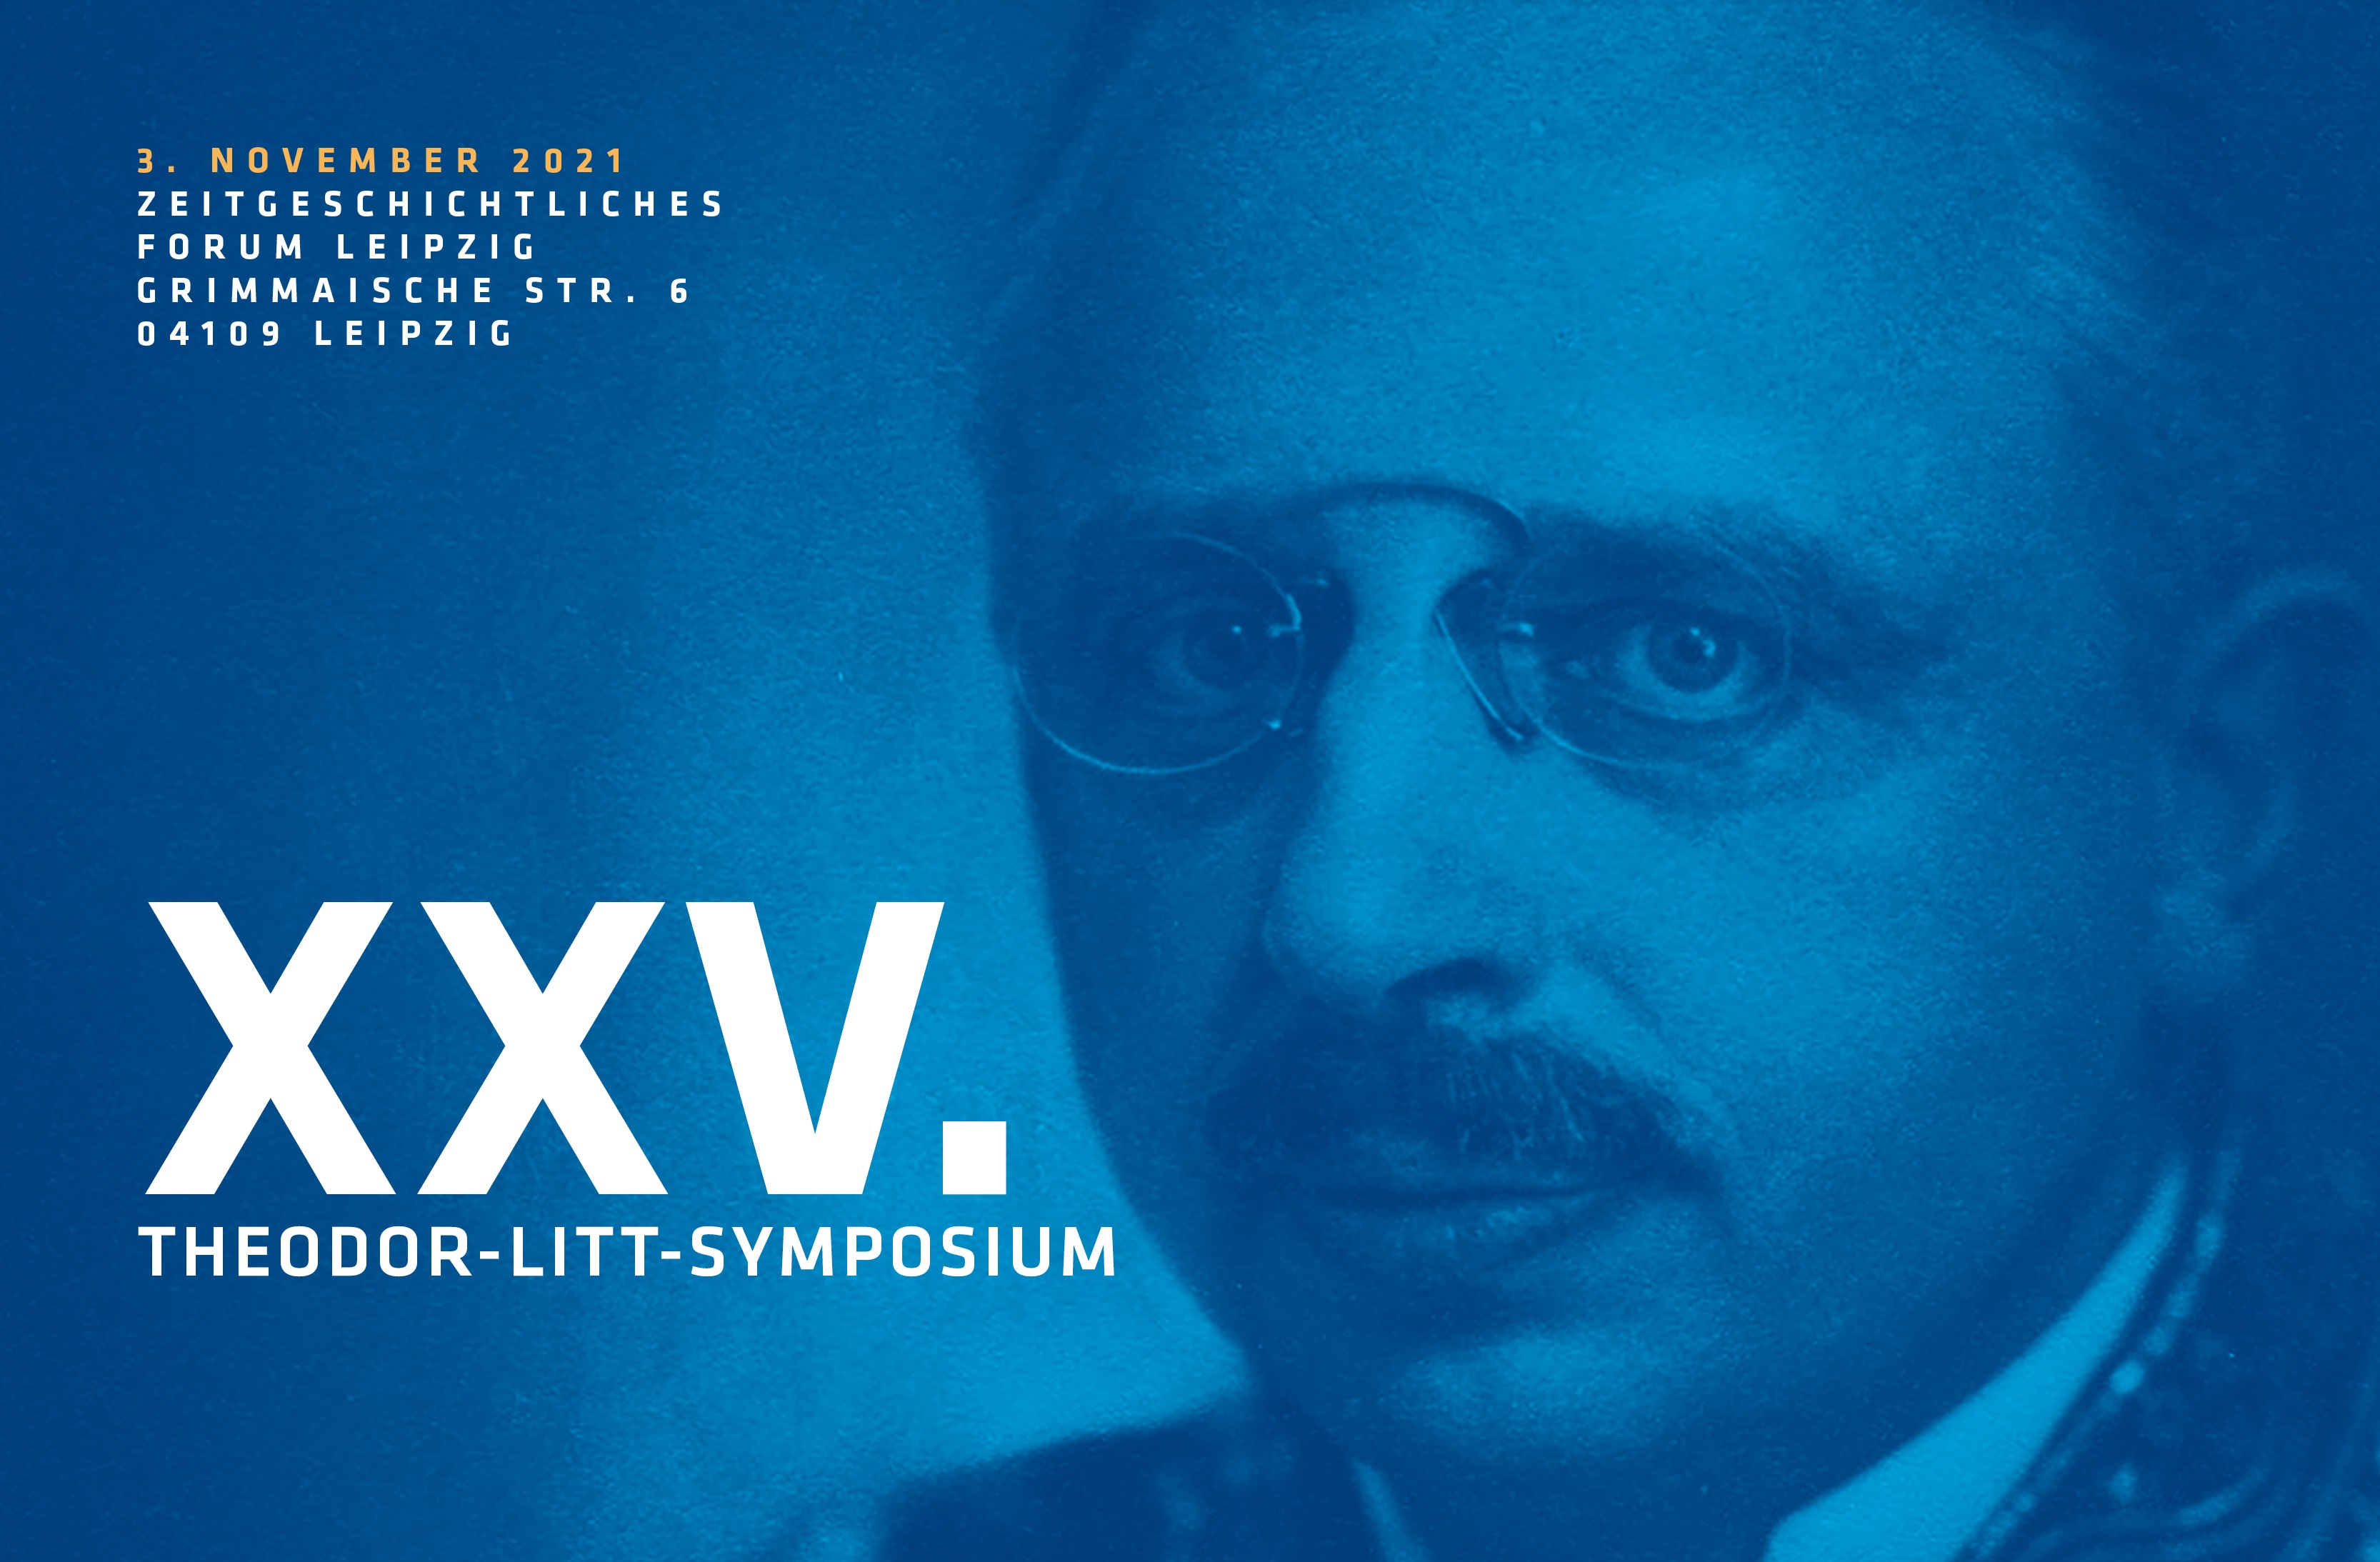 Litt-Symposium 2021